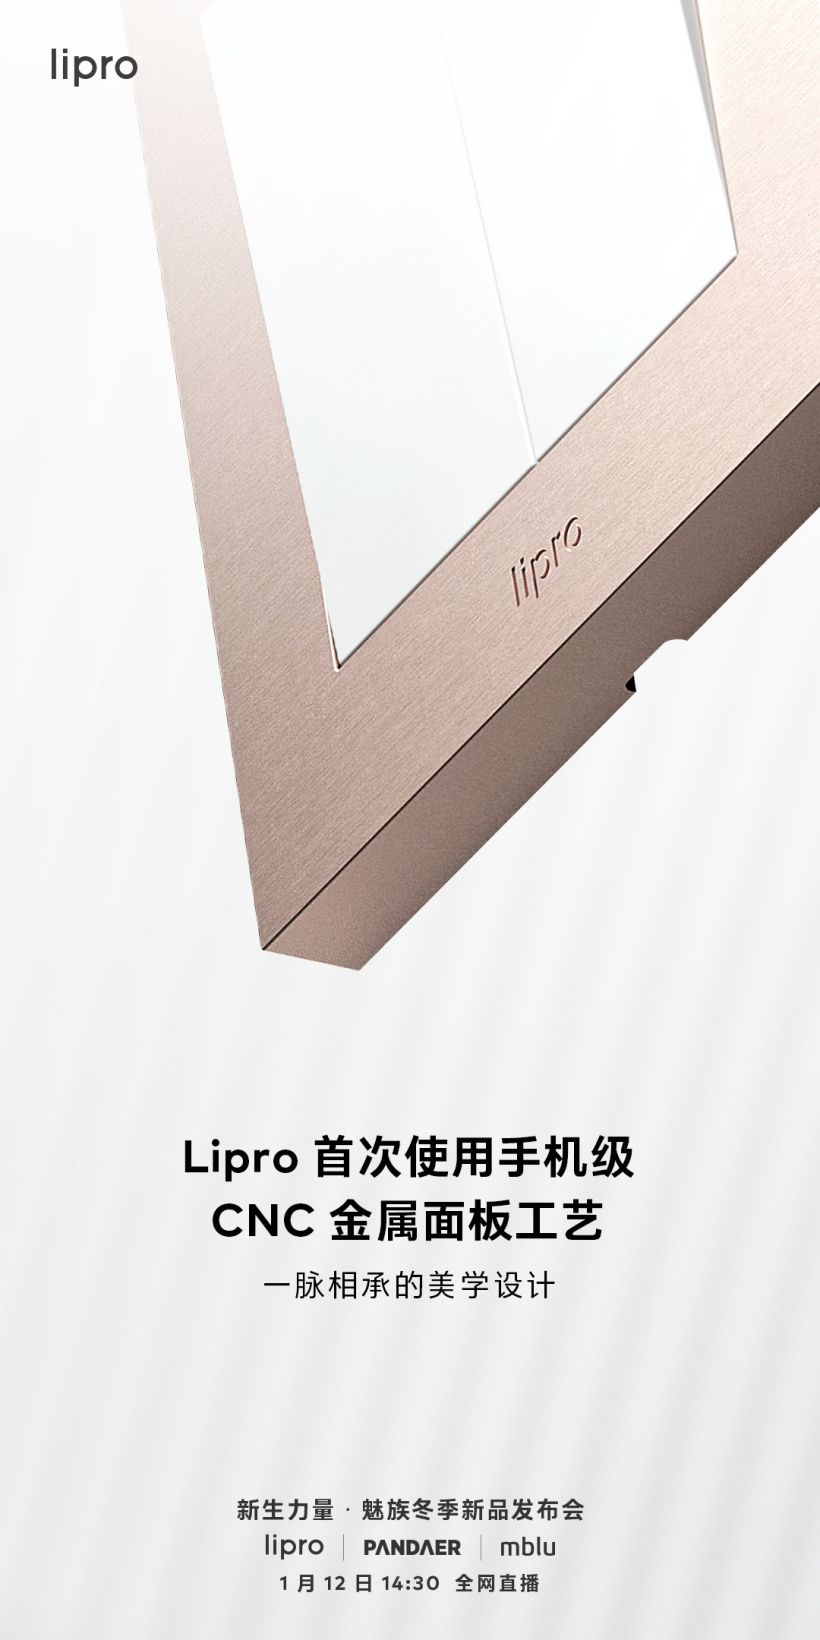 魅族新款 Lipro 智能开关预热：首次采用手机级 CNC 金属工艺